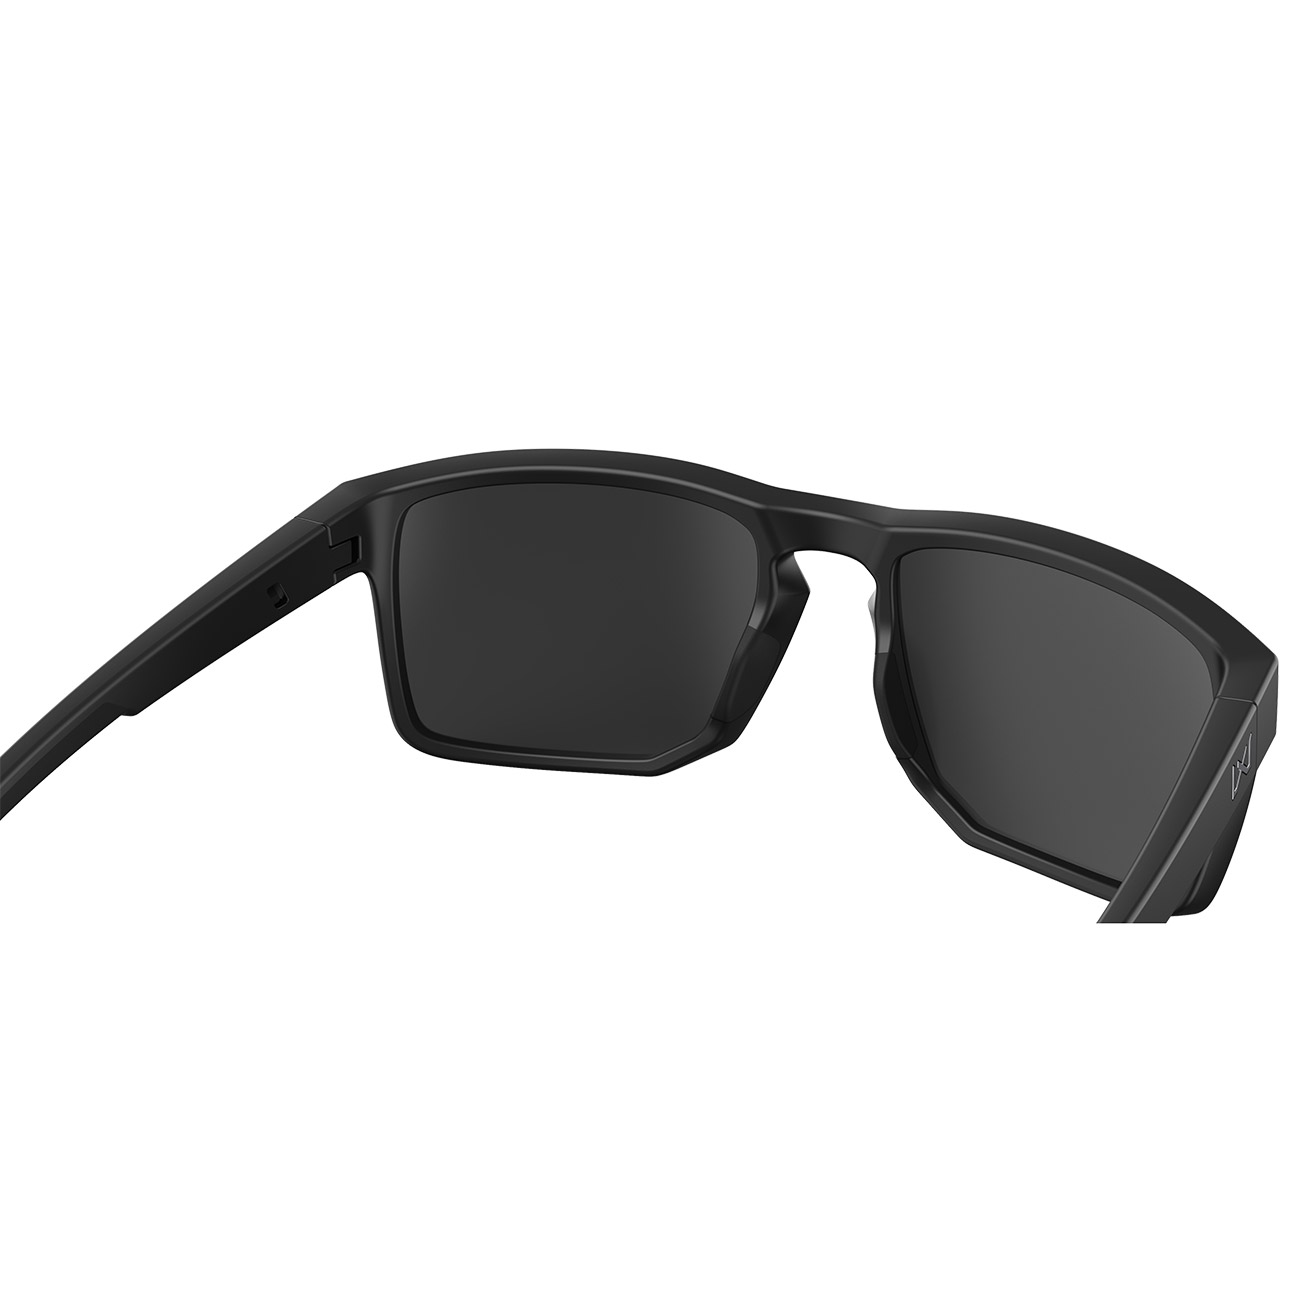 Wiley X Sonnebrille Founder Captivate matt schwarz Glser schwarz verspiegelt und polarisiert inkl. Seitenschutz Bild 3